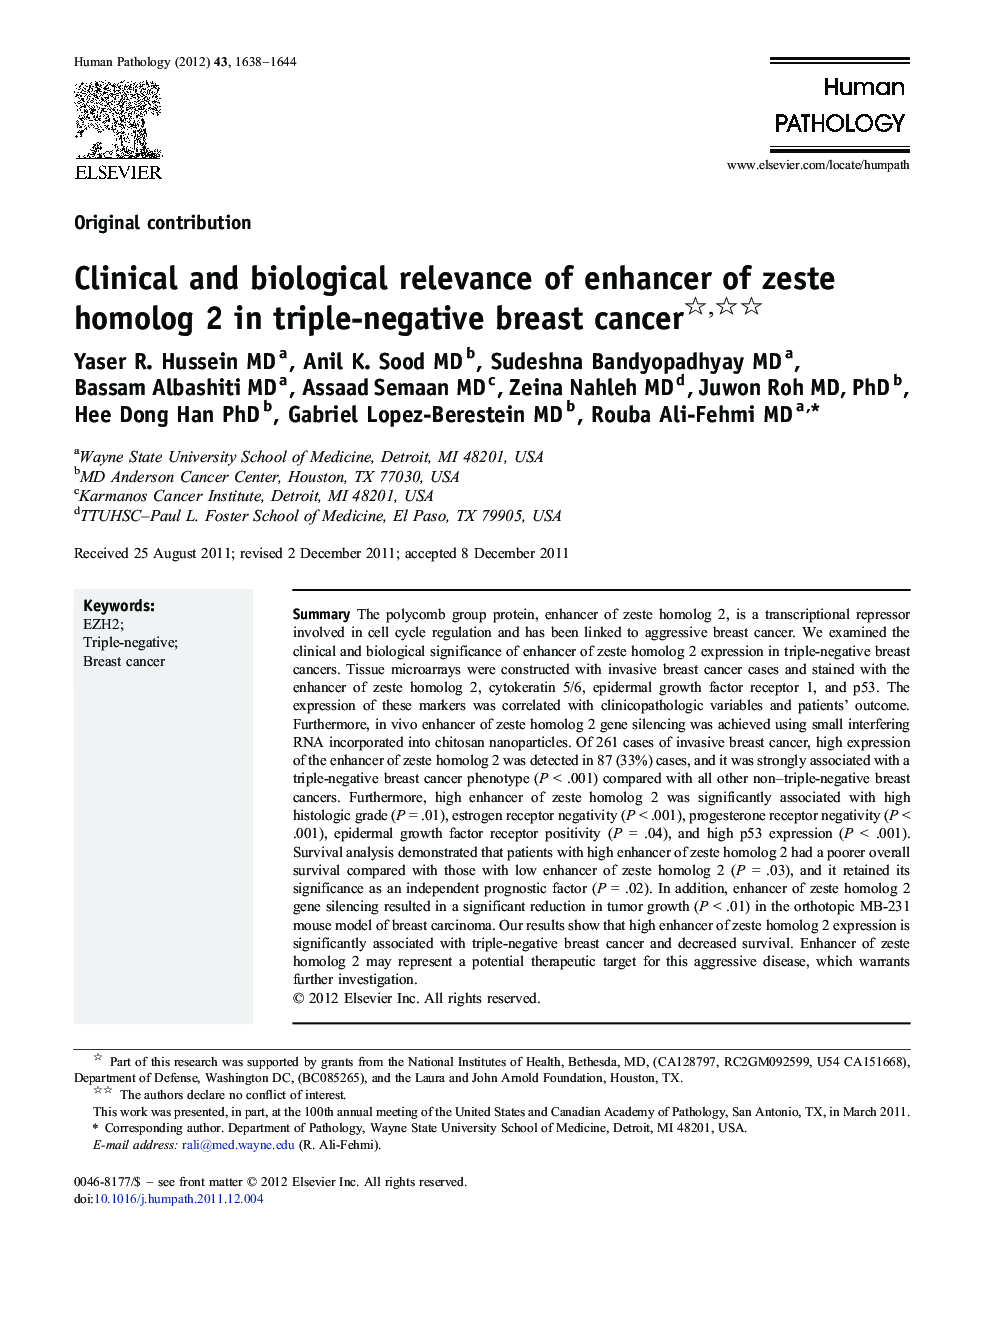 Clinical and biological relevance of enhancer of zeste homolog 2 in triple-negative breast cancer 